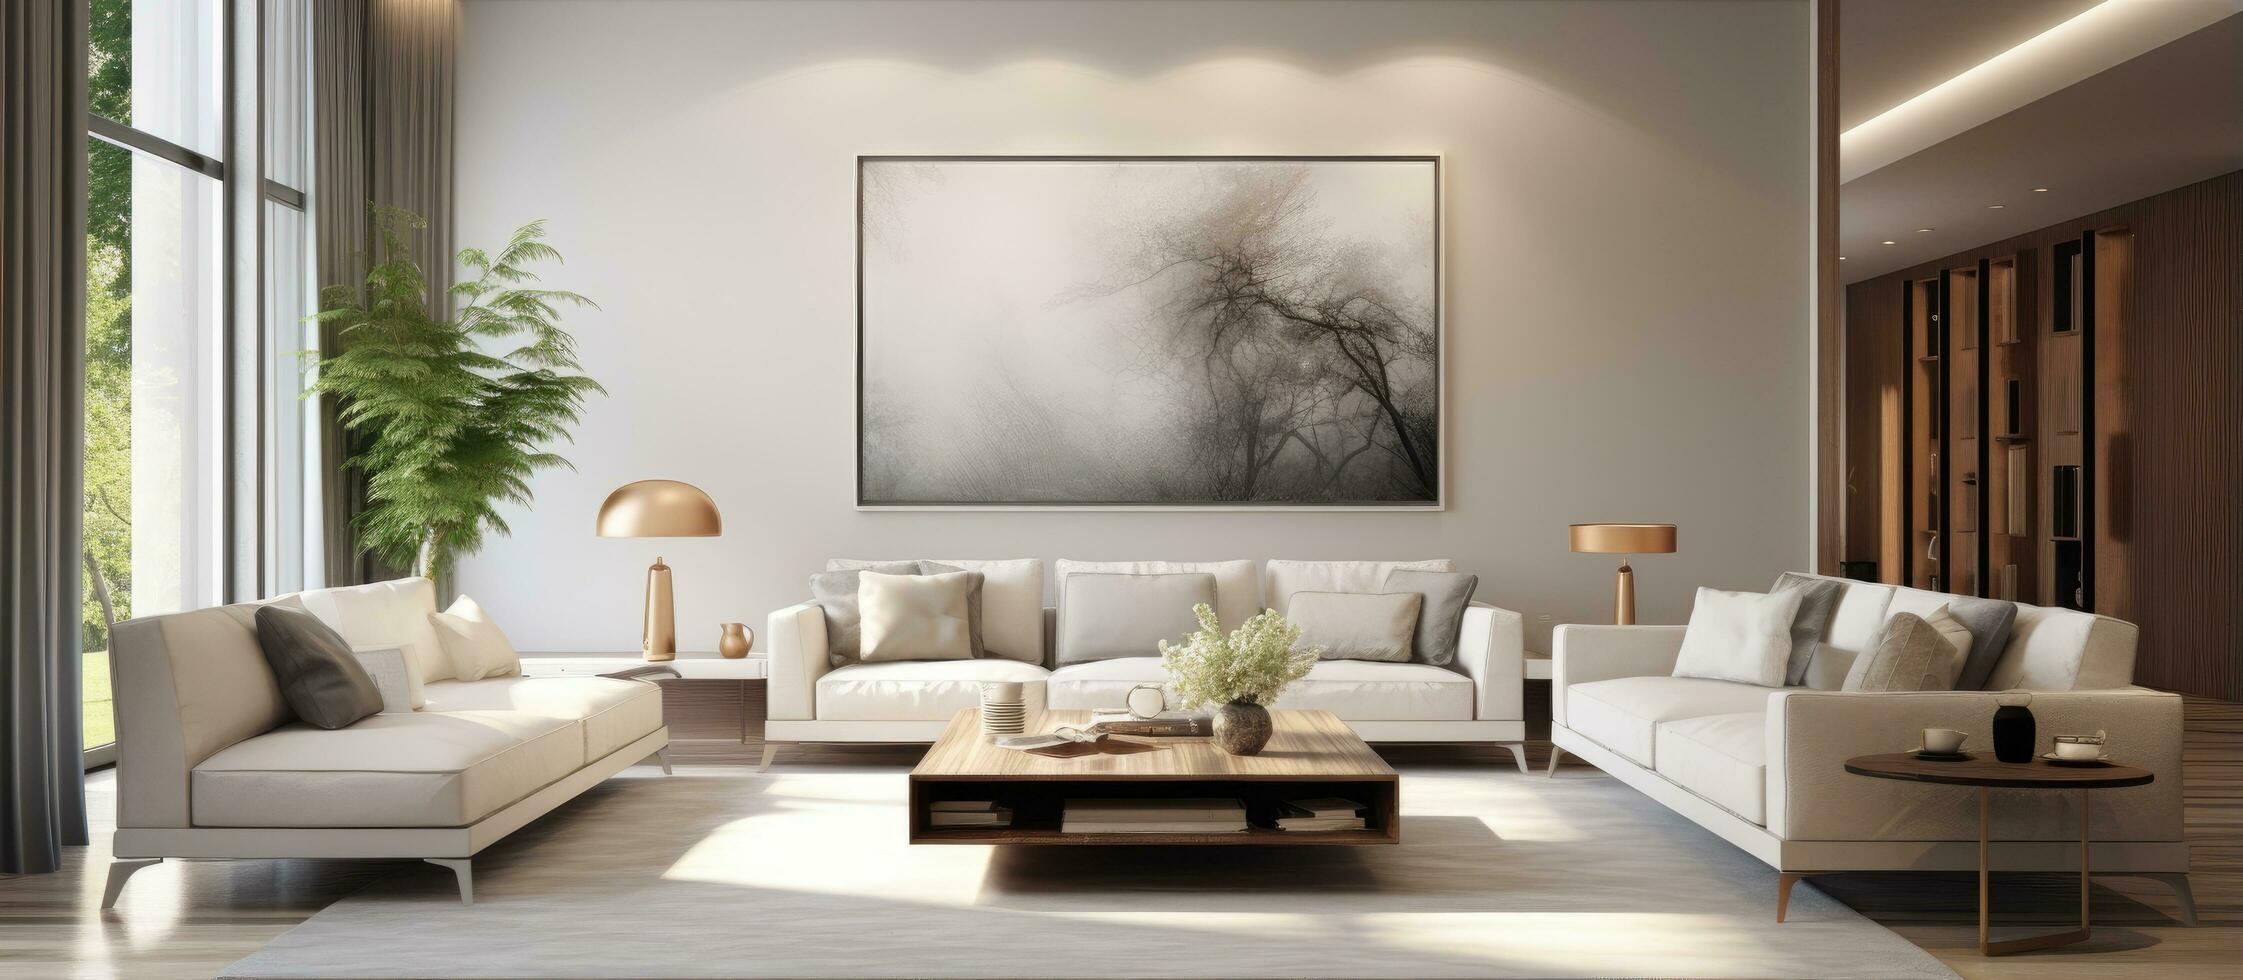 blanc minimaliste pièce avec canapé dans scandinave intérieur conception représenté dans une illustration photo